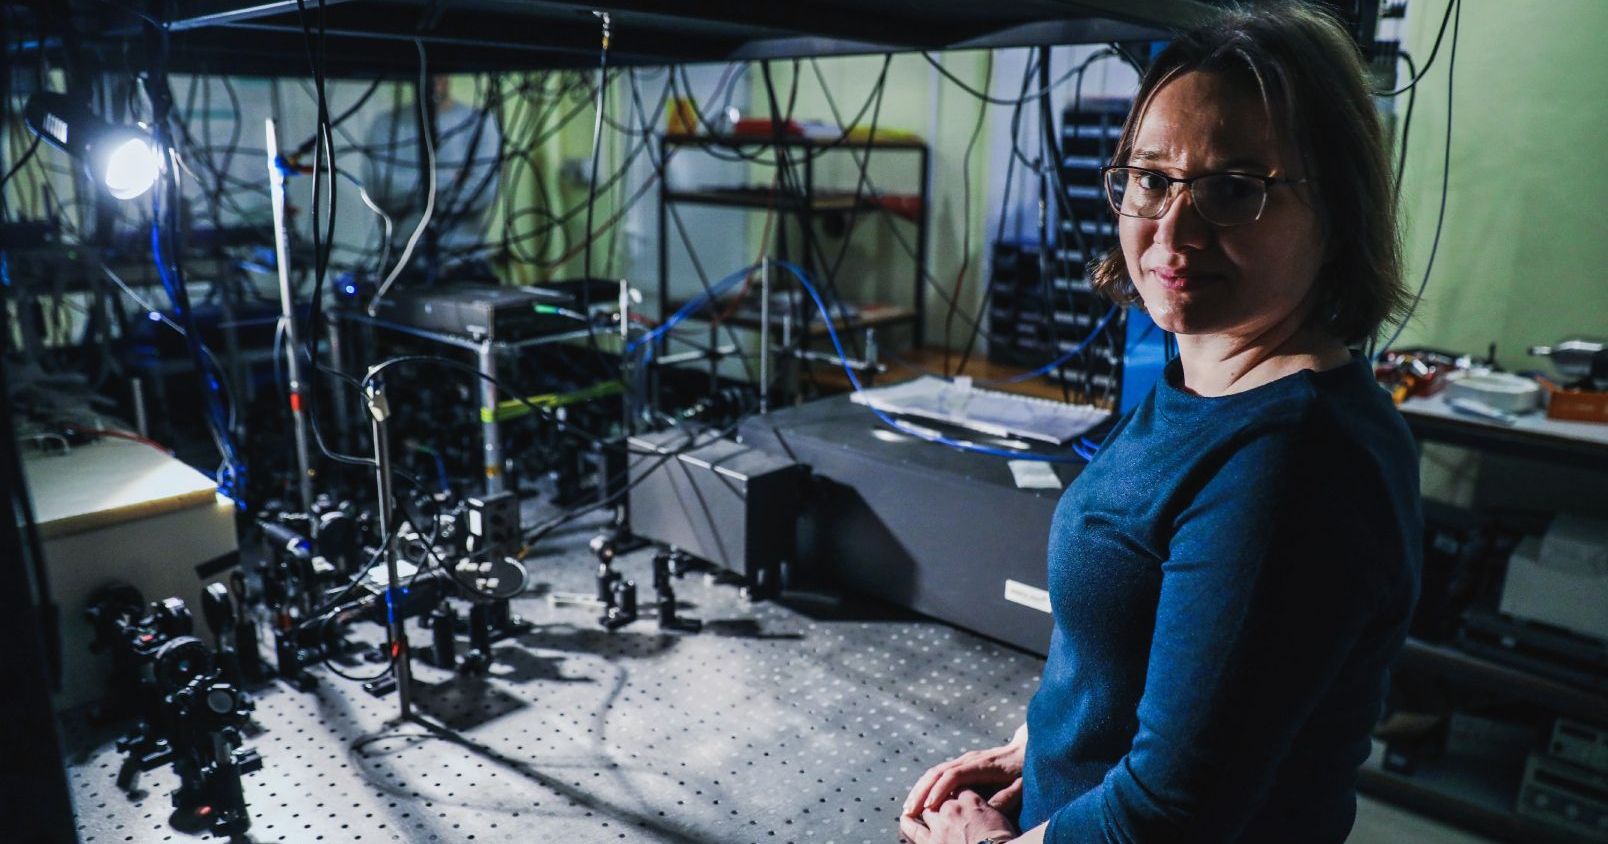 W laboratorium, pełnym sprzętów i kabli, po prawej stronie stoi kobieta w okularach